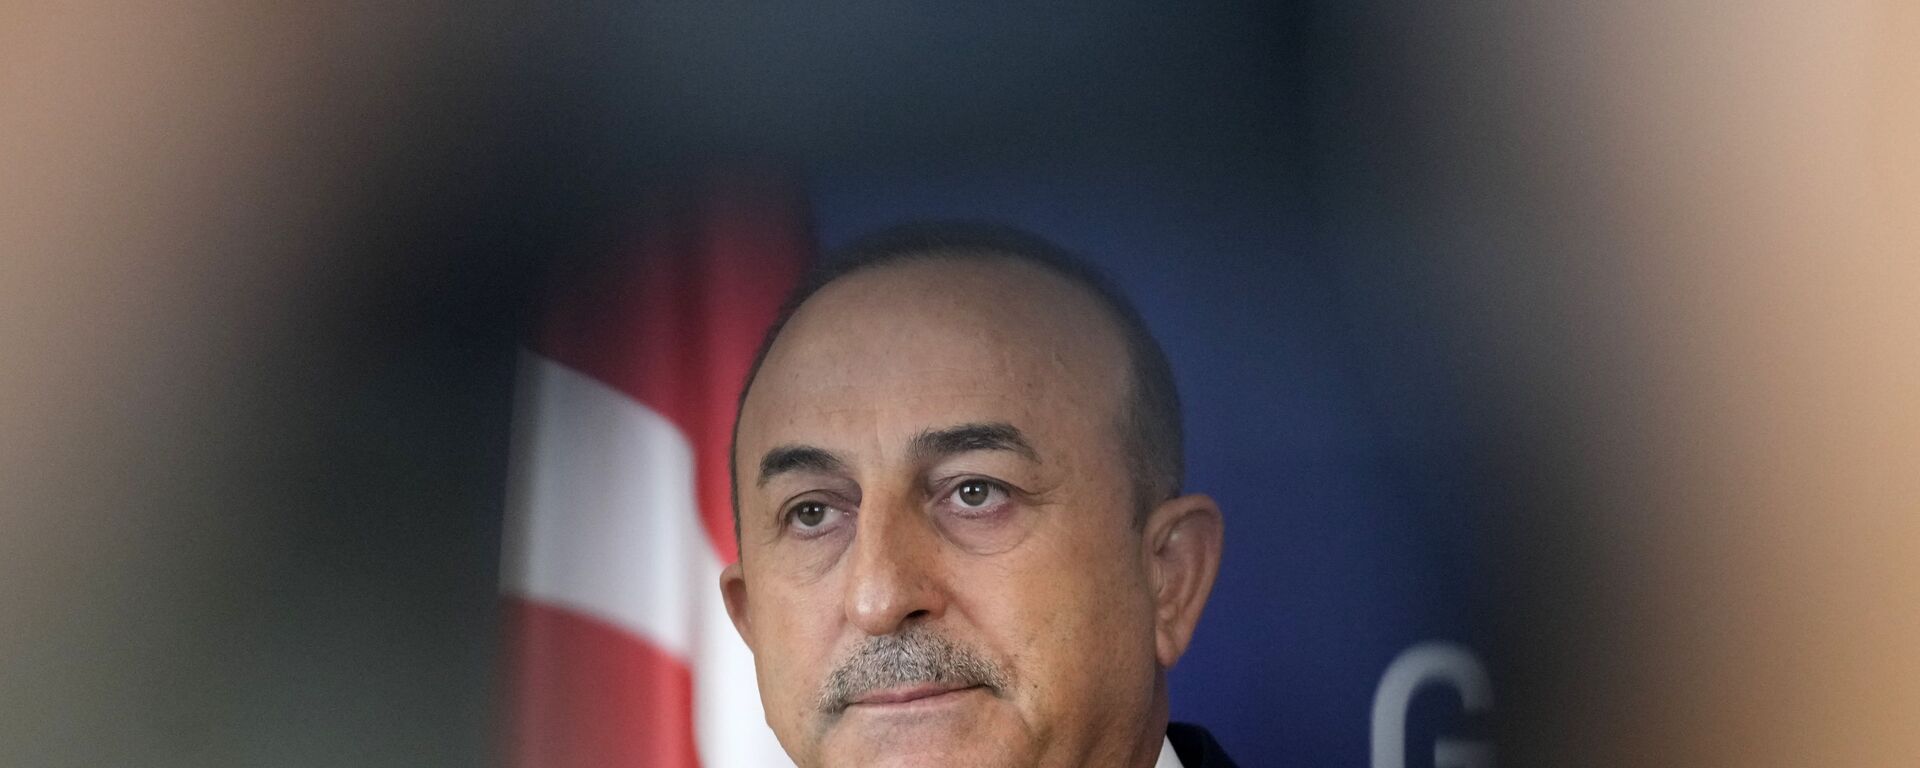 Министр иностранных дел Турции Мевлют Чавушоглу, фото из архива - Sputnik Азербайджан, 1920, 13.10.2021